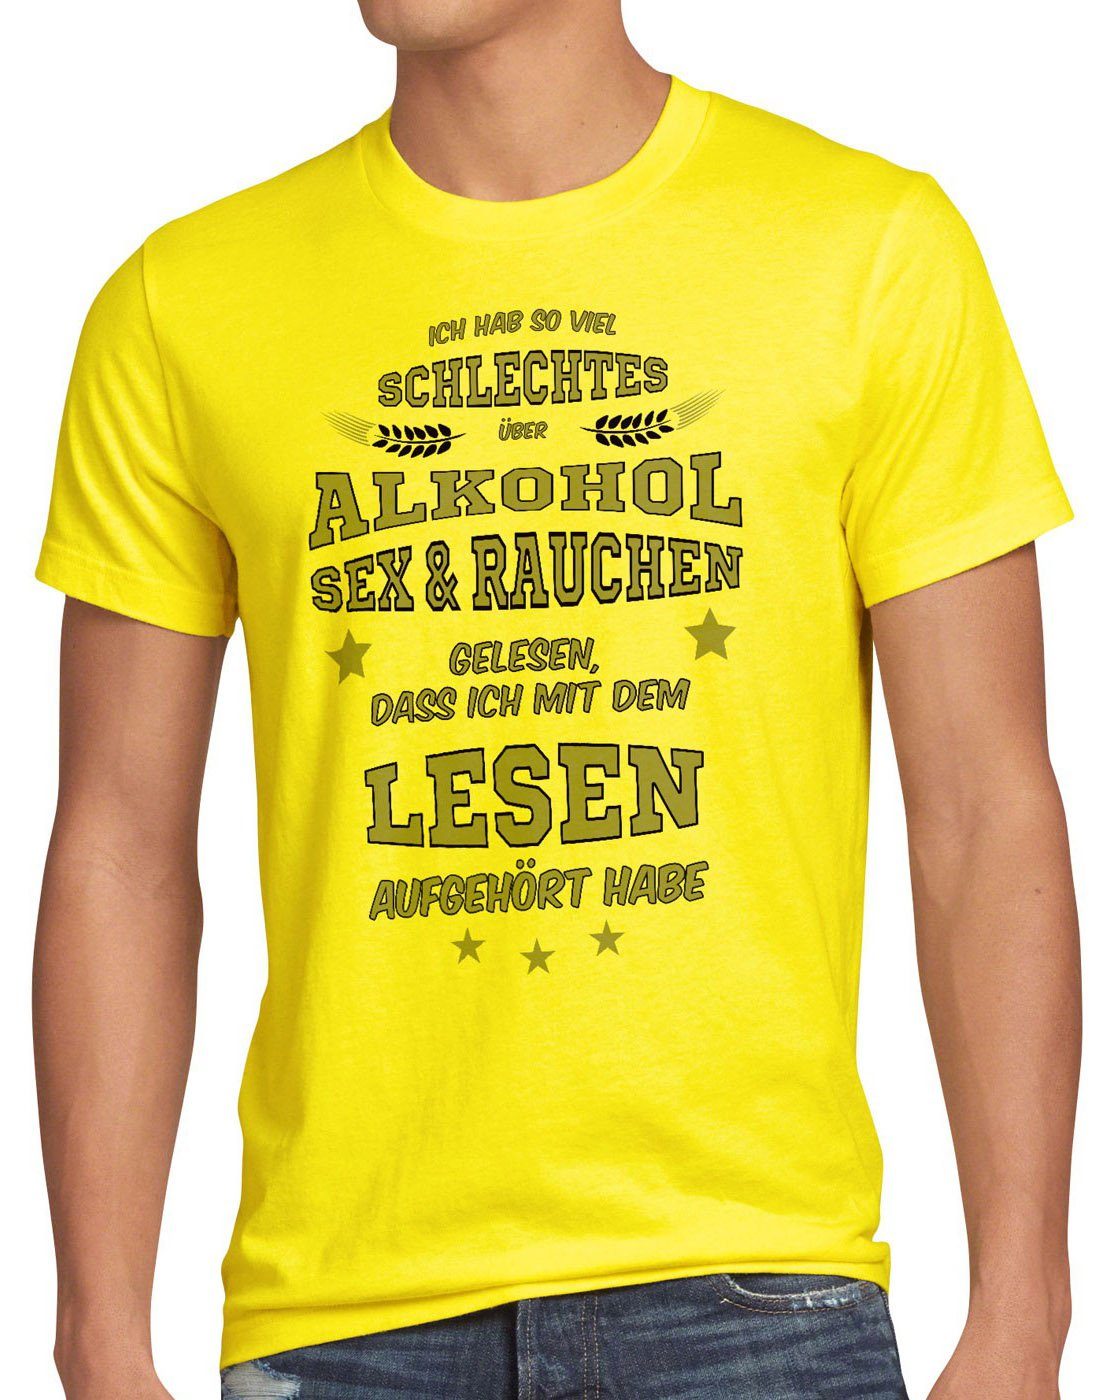 schlechtes T-Shirt Viel Funshirt Herren Alkohol gelesen Spruch Fun Sex Rauchen style3 gelb Print-Shirt